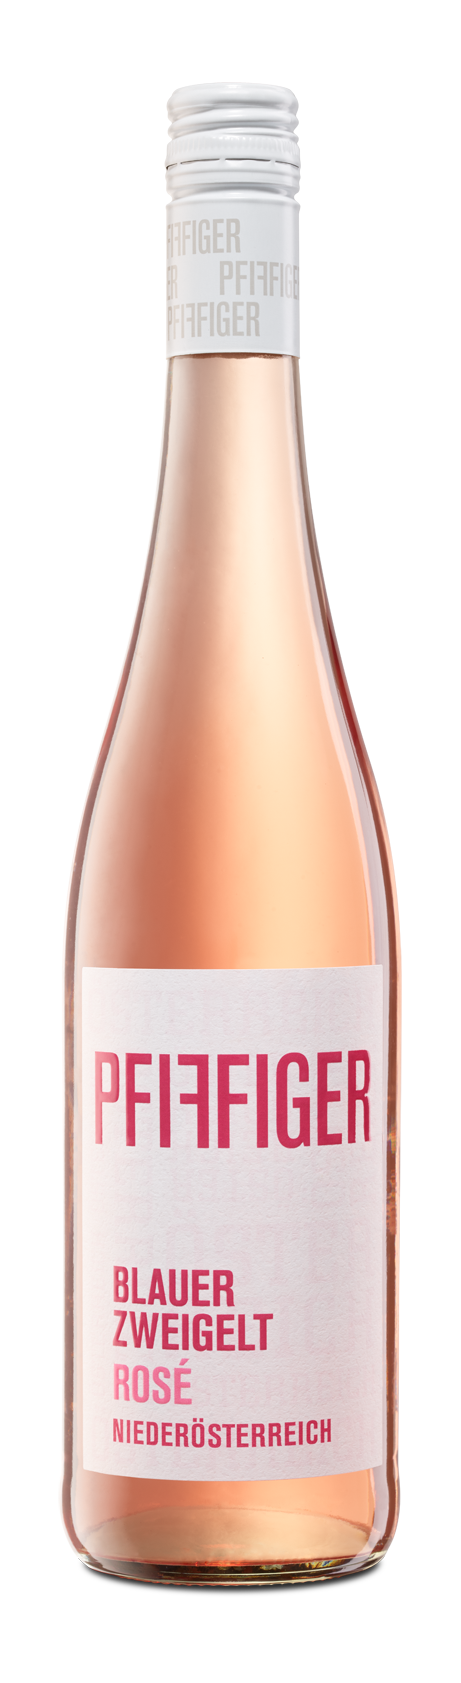 Pfiffiger – Blauer Zweigelt Rosé Quality Wine - Global Wines